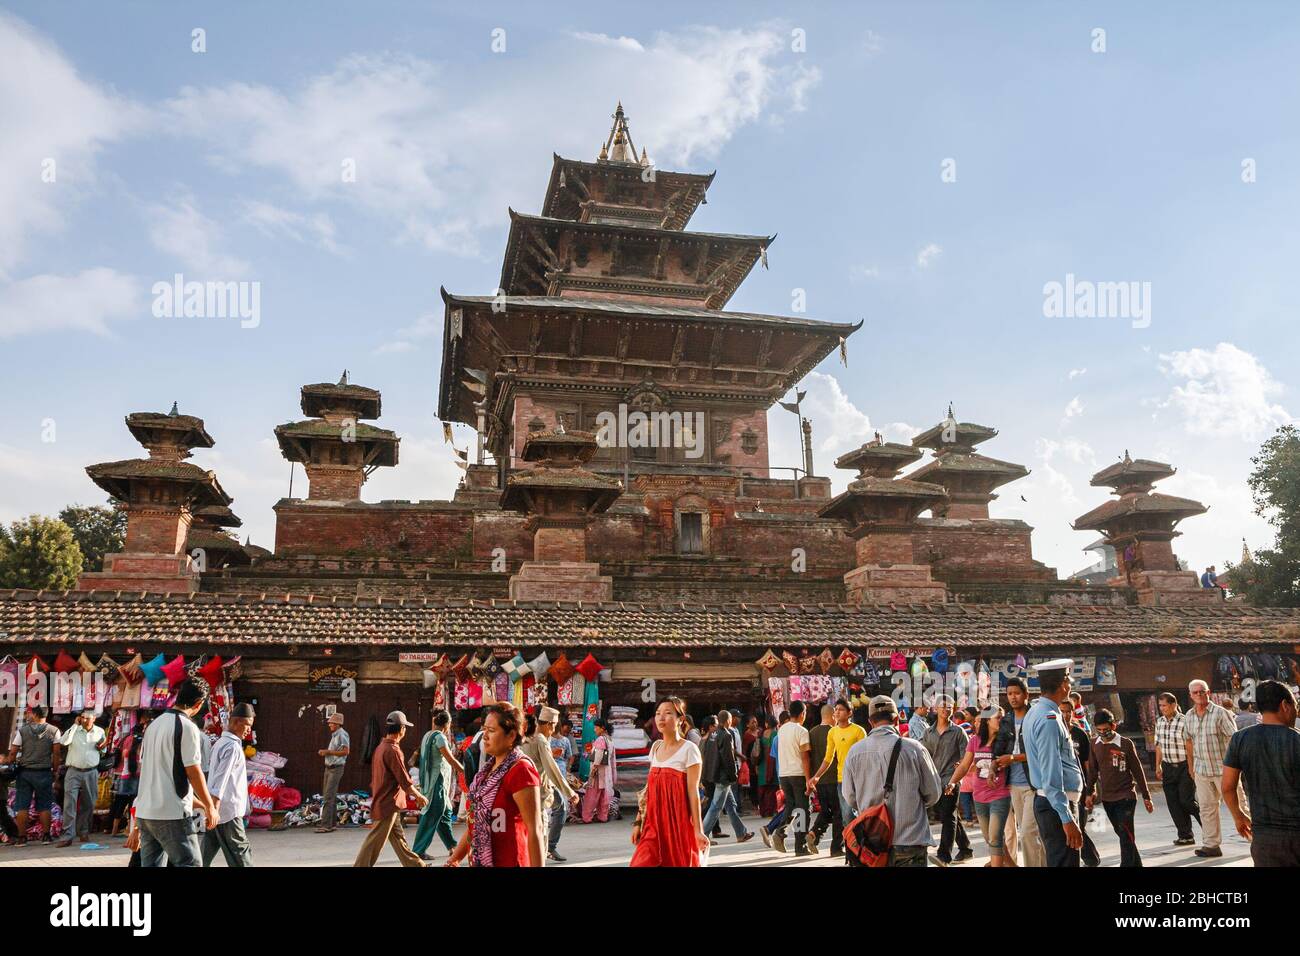 KATHMANDU, NEPAL - 29. SEPTEMBER 2012: Markt und Menschenmenge von Einheimischen und Touristen an den Mauern des alten Taleju Tempels auf dem Durbar Platz in Kathman Stockfoto